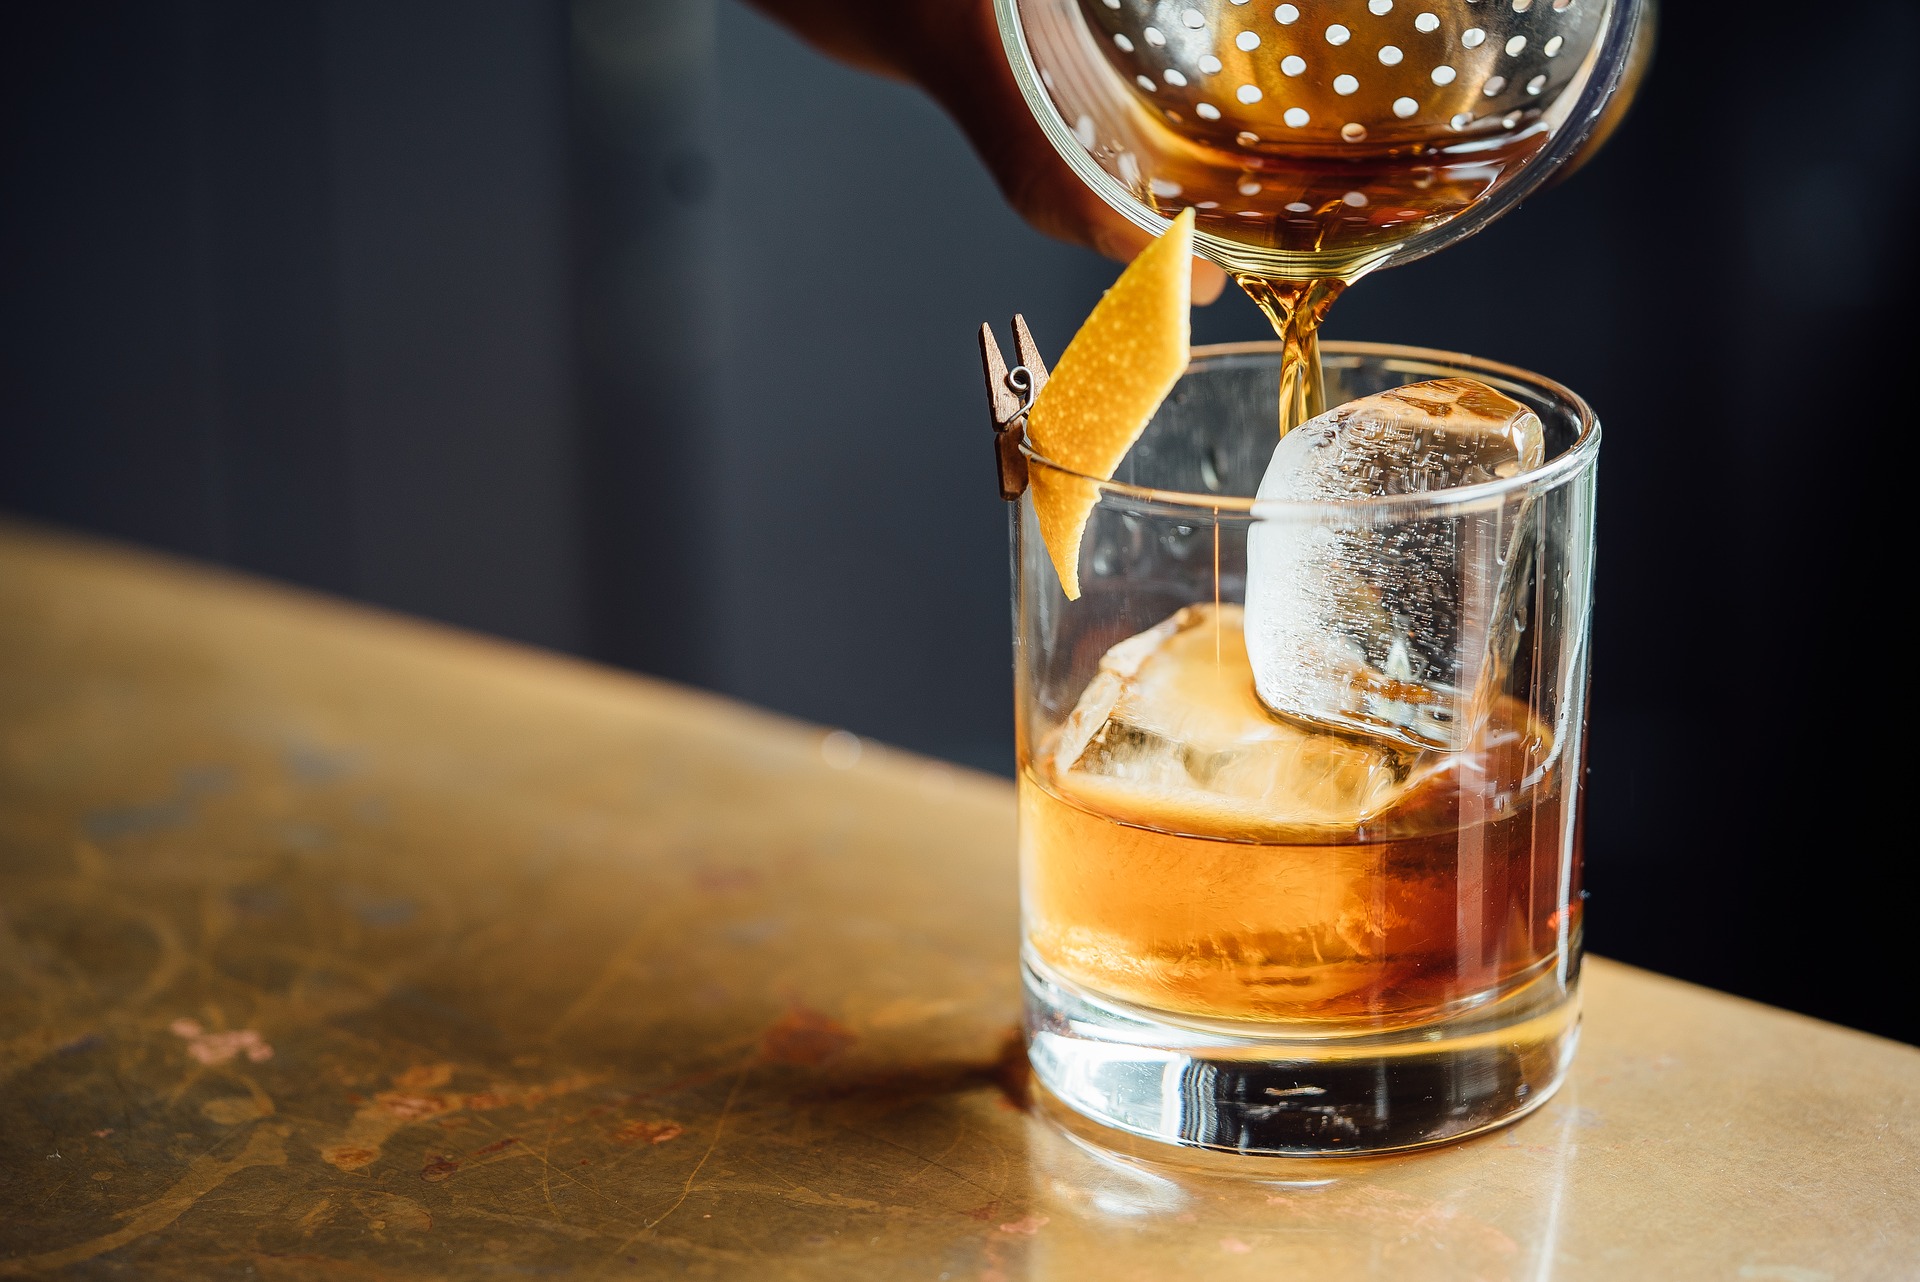 Para Emiliano Armesto, el whisky “nunca se fue y cada vez se consume más” y, a la hora de elegir un tipo de esta bebida, señaló que “el mejor es el que le gusta a cada uno” (Foto: Pixabay)